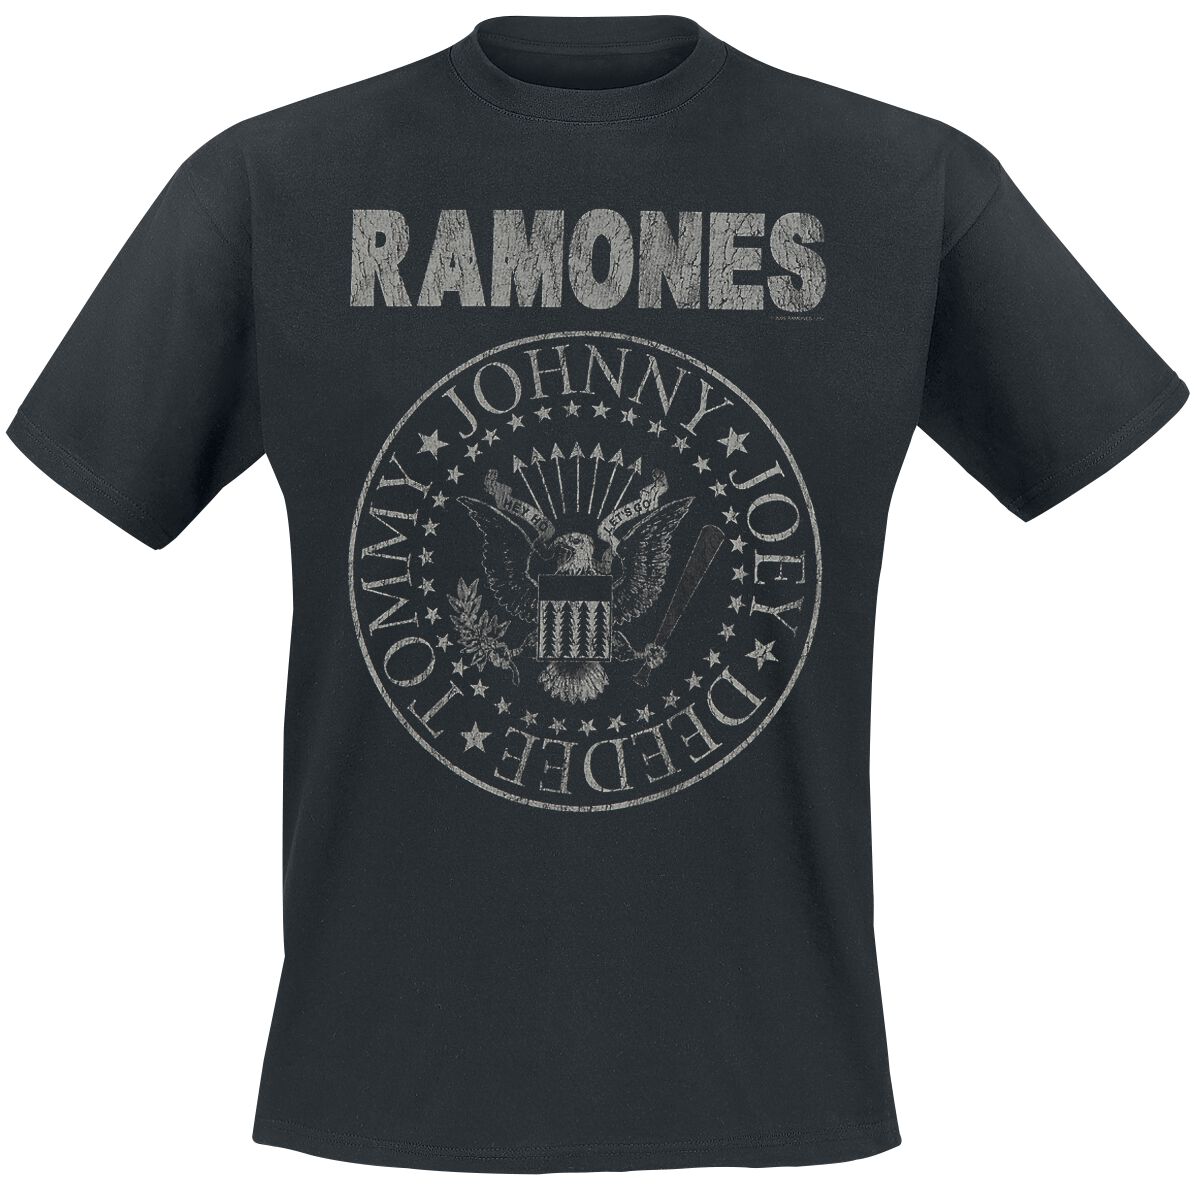 Ramones T-Shirt - Hey Ho Let`s Go - Vintage - S bis 5XL - für Männer - Größe 4XL - schwarz  - Lizenziertes Merchandise!